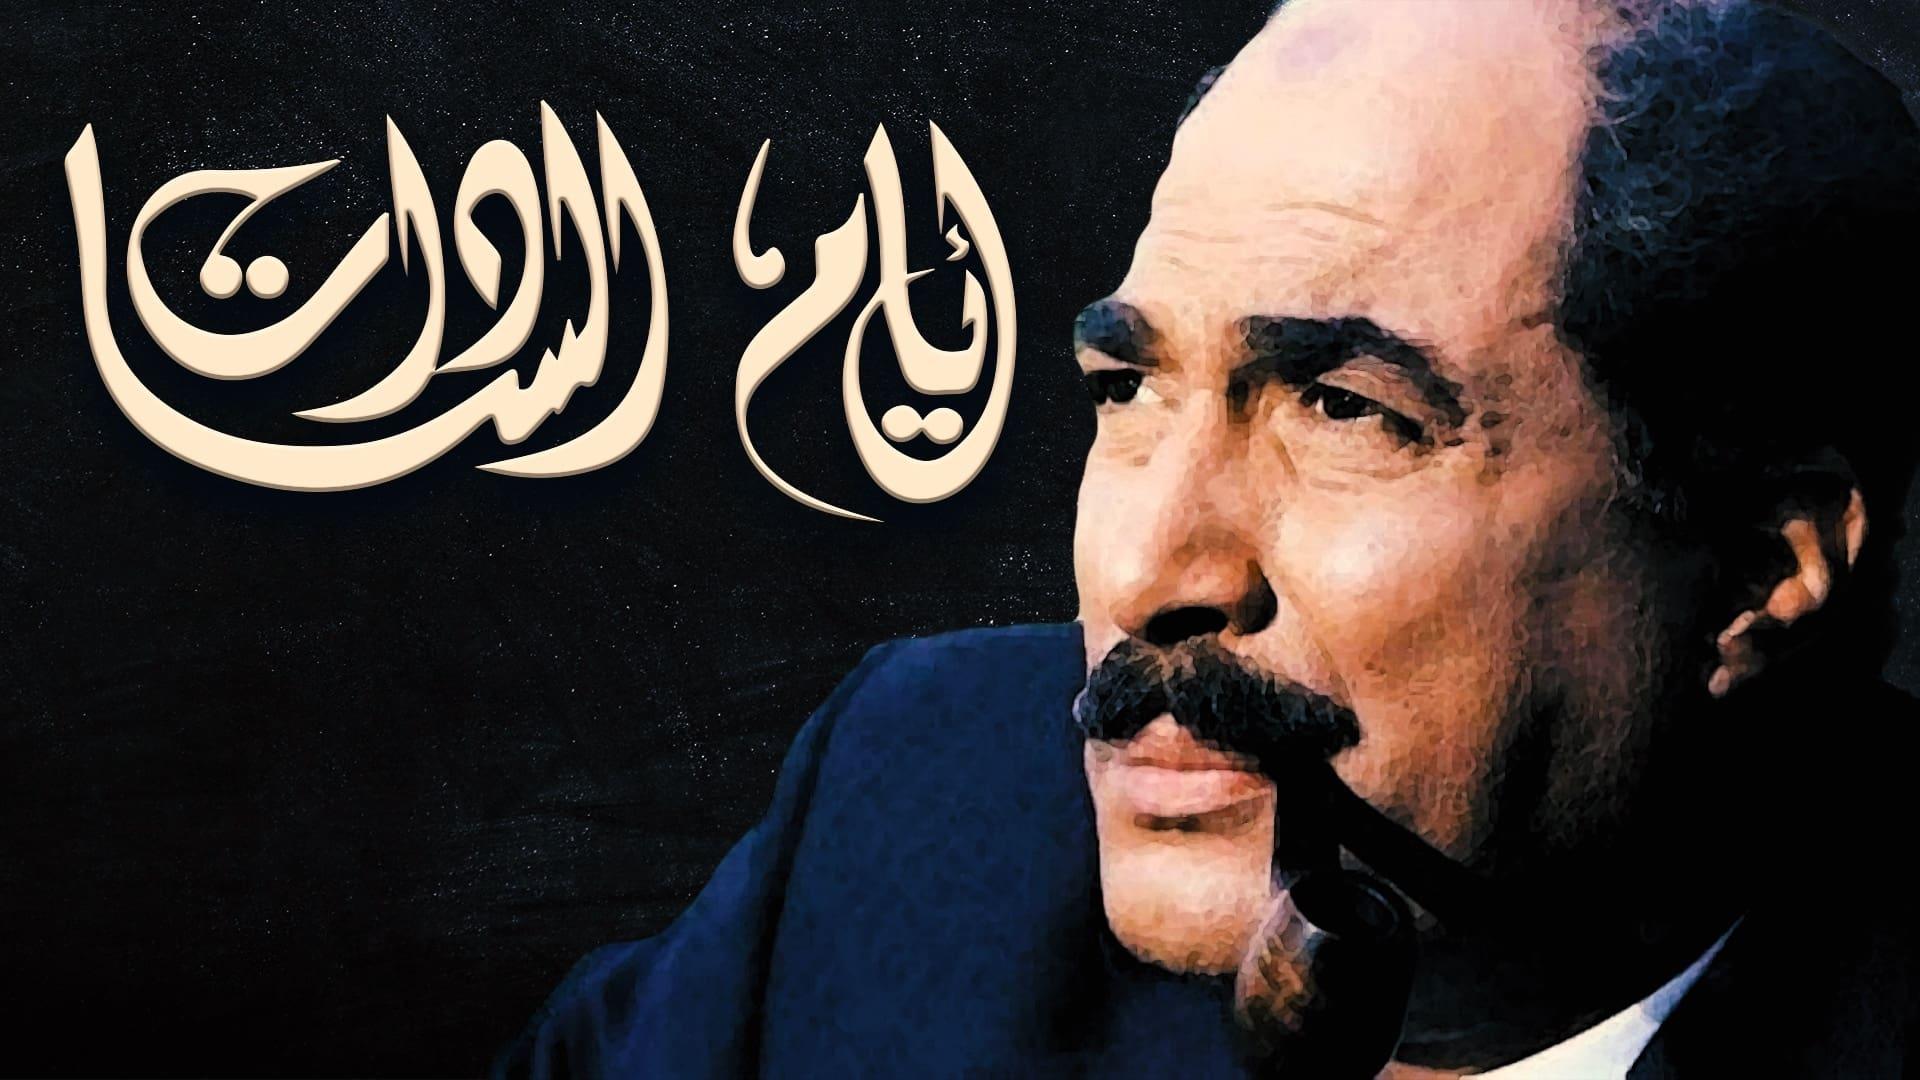 Mohamed El-Sabaa backdrop